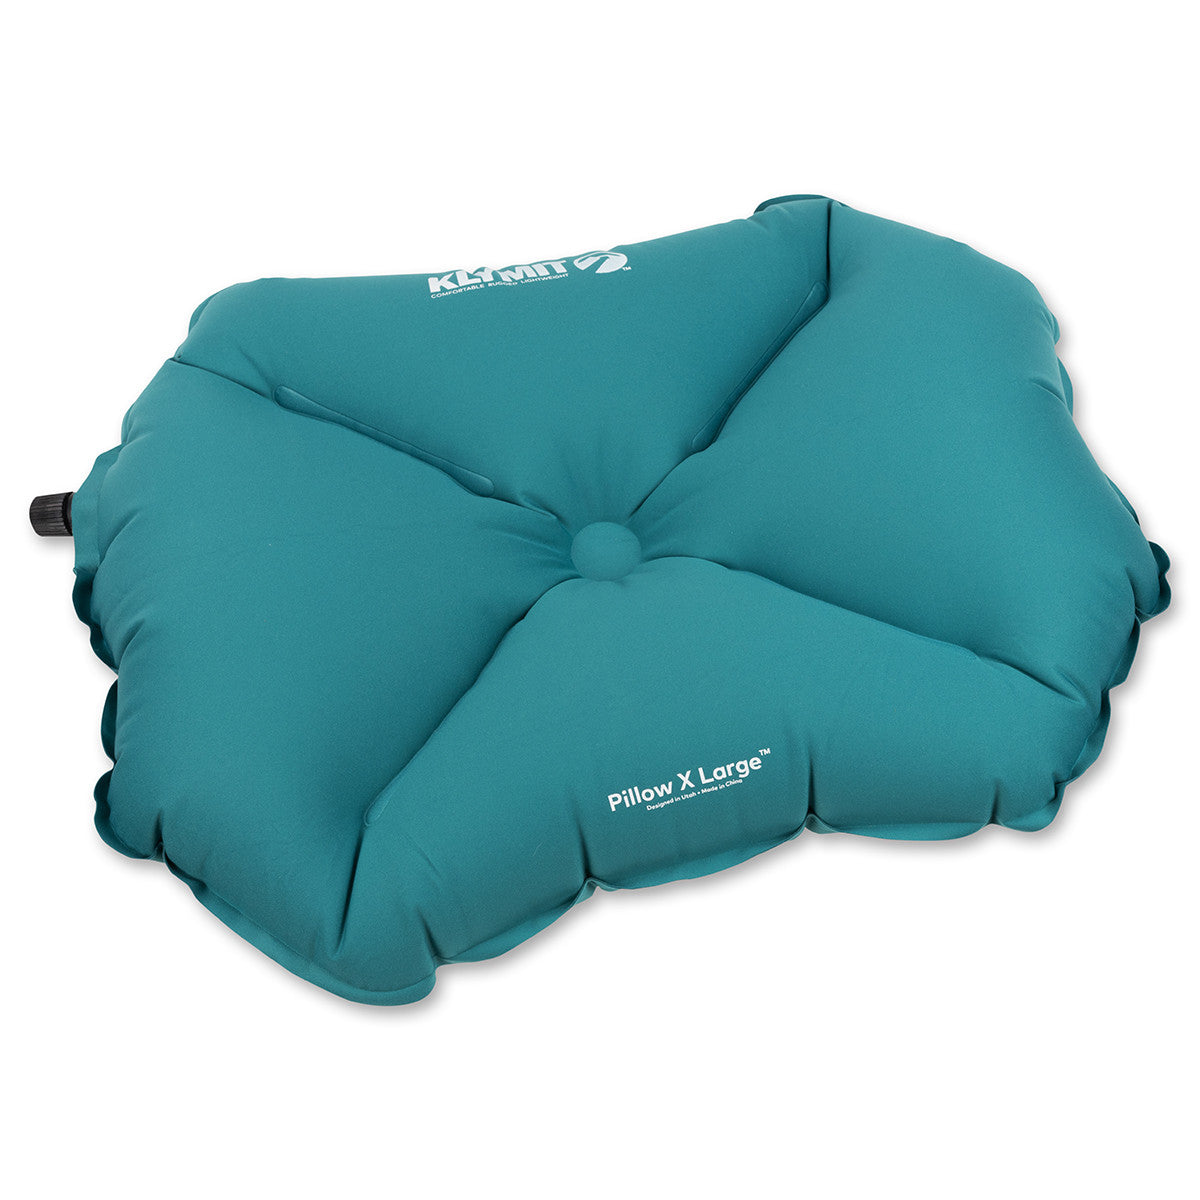 Klymit Pillow X Large in Klymit Pillow X Large - goHUNT Shop by GOHUNT | Klymit - GOHUNT Shop